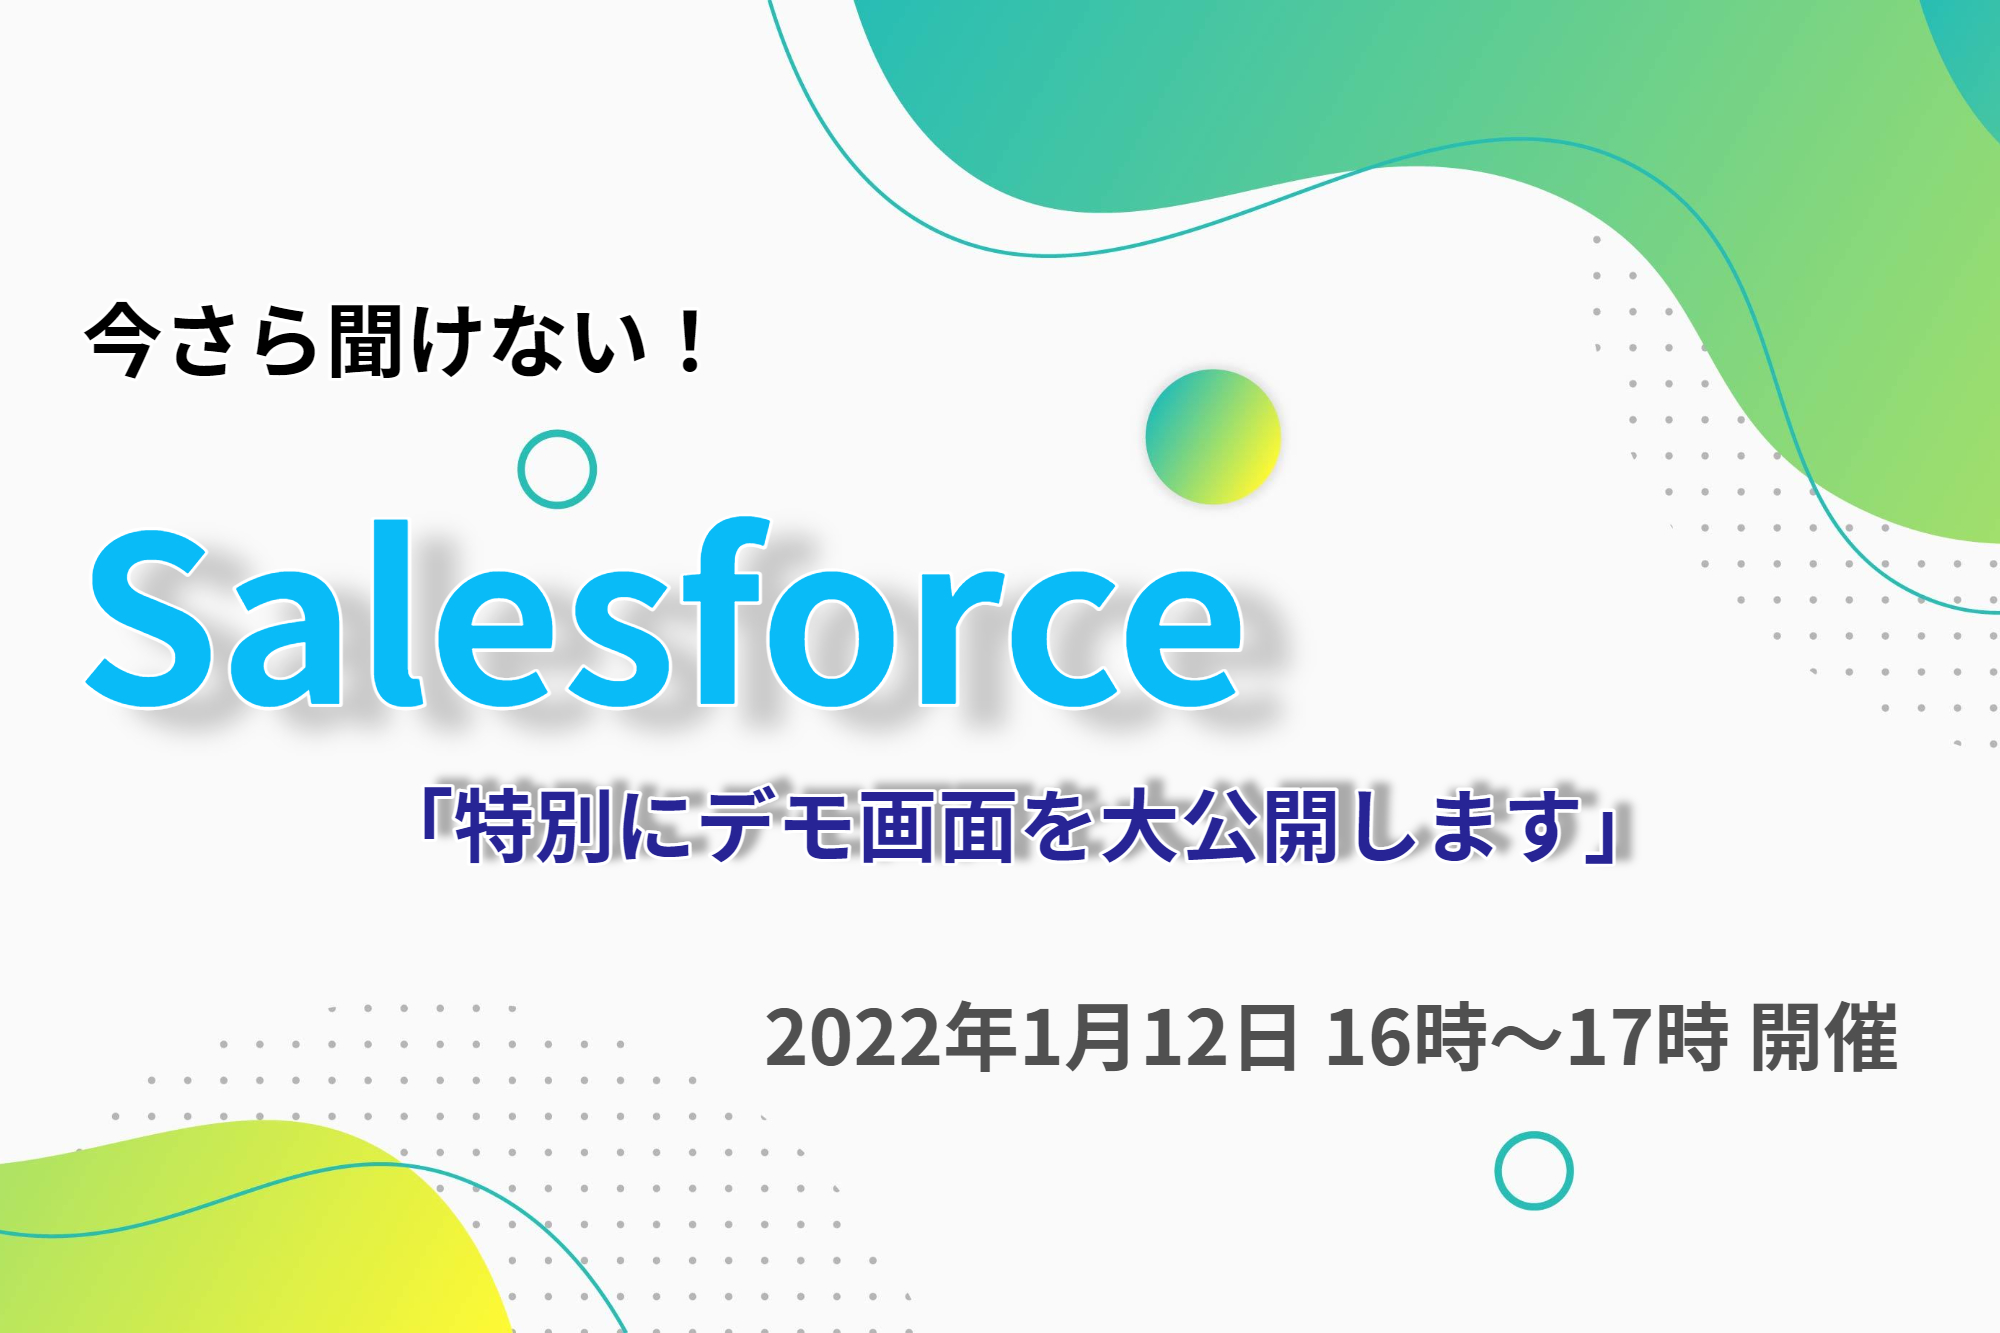 10月12日(火)オンラインセミナー開催 【Salesforce14年間の運用ノウハウから解く！】売上拡大を実現させる営業改革・組織改革に必要な事とは？